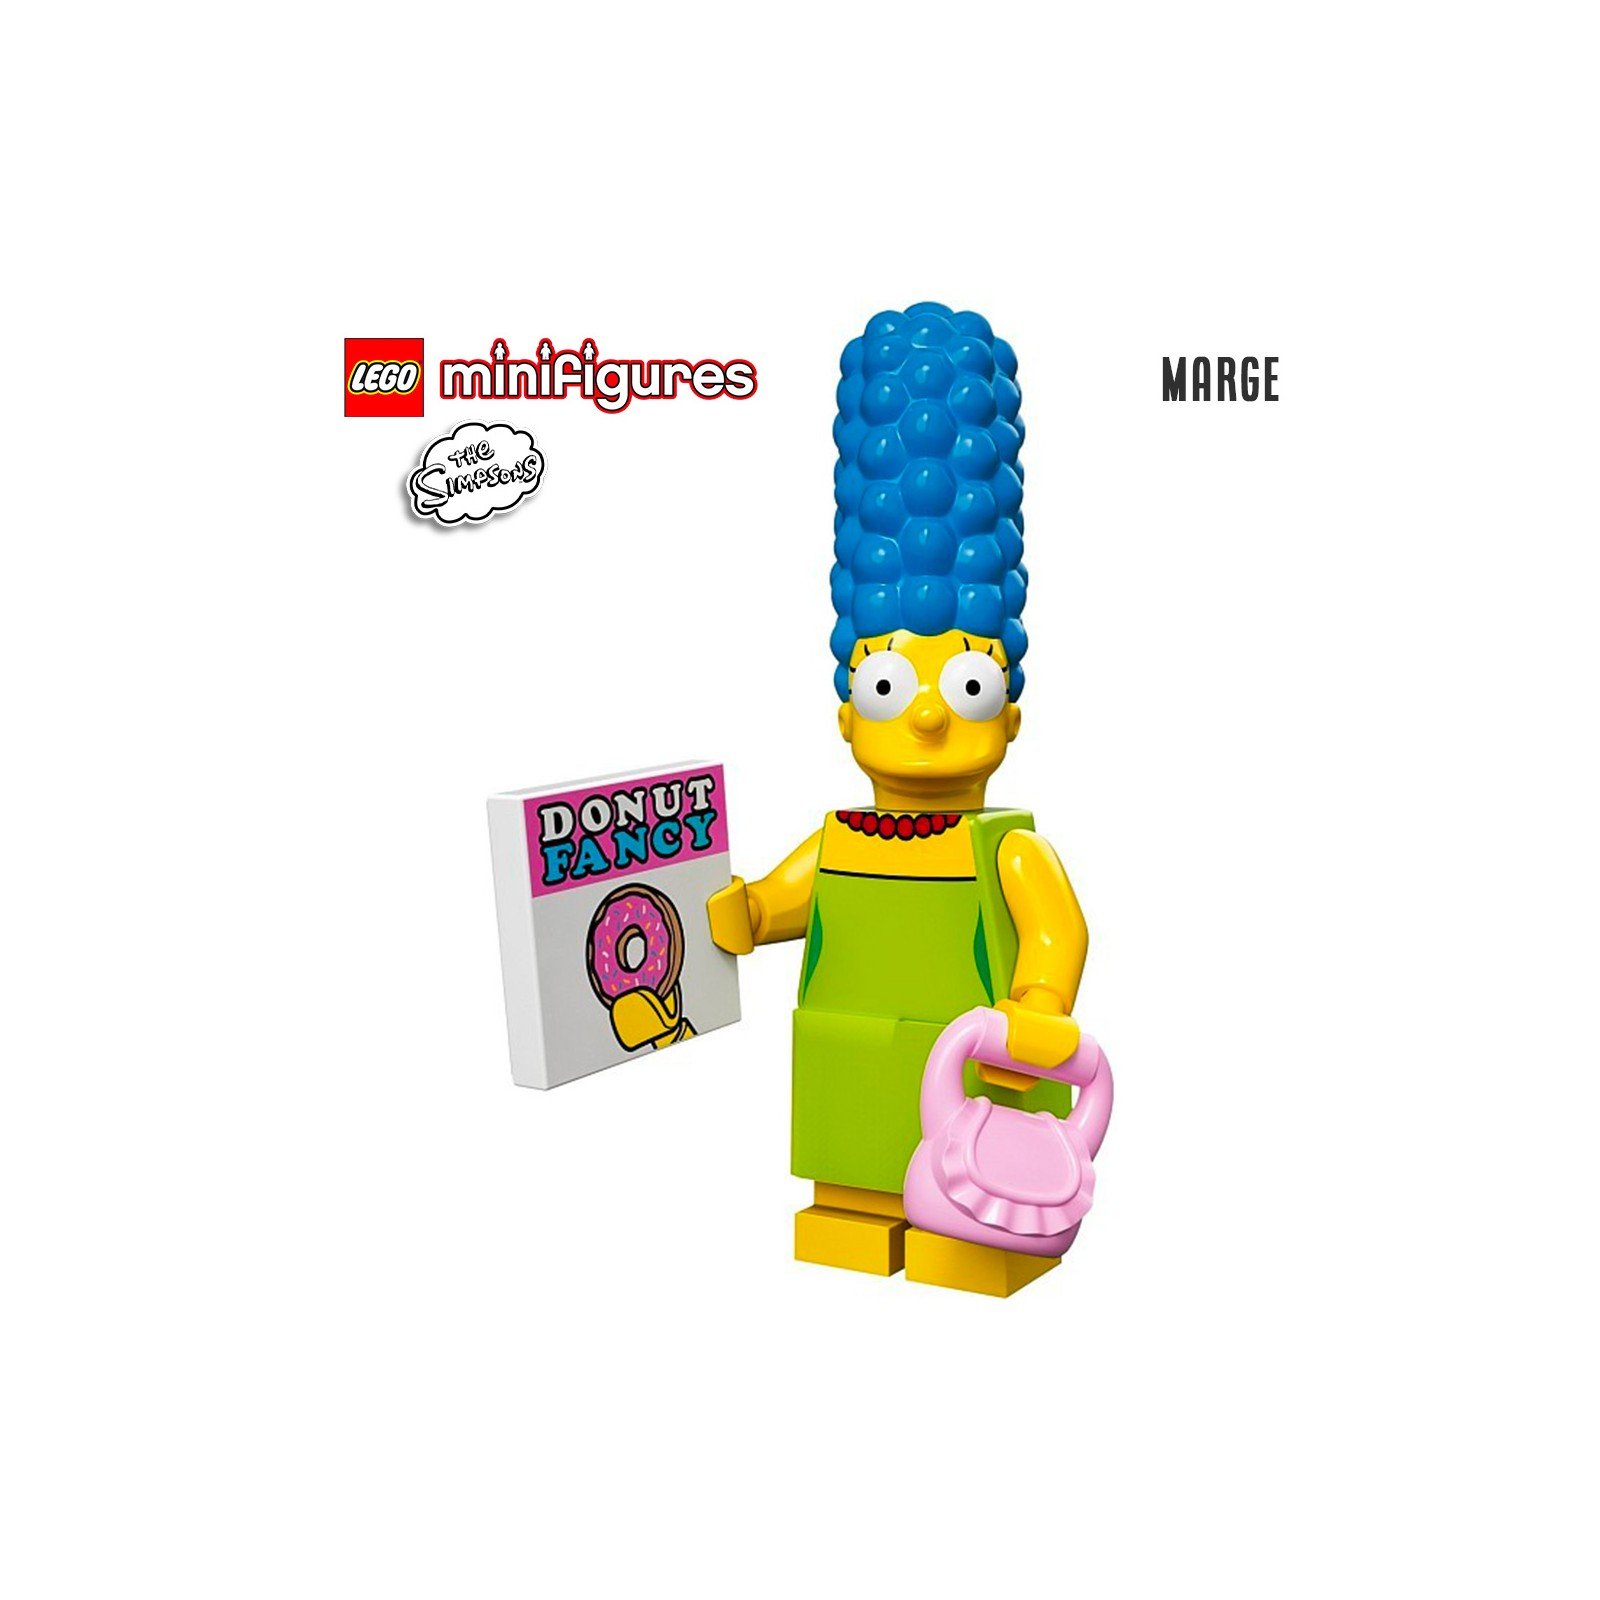 Minifigure LEGO® Simpson Série 1 - Marge